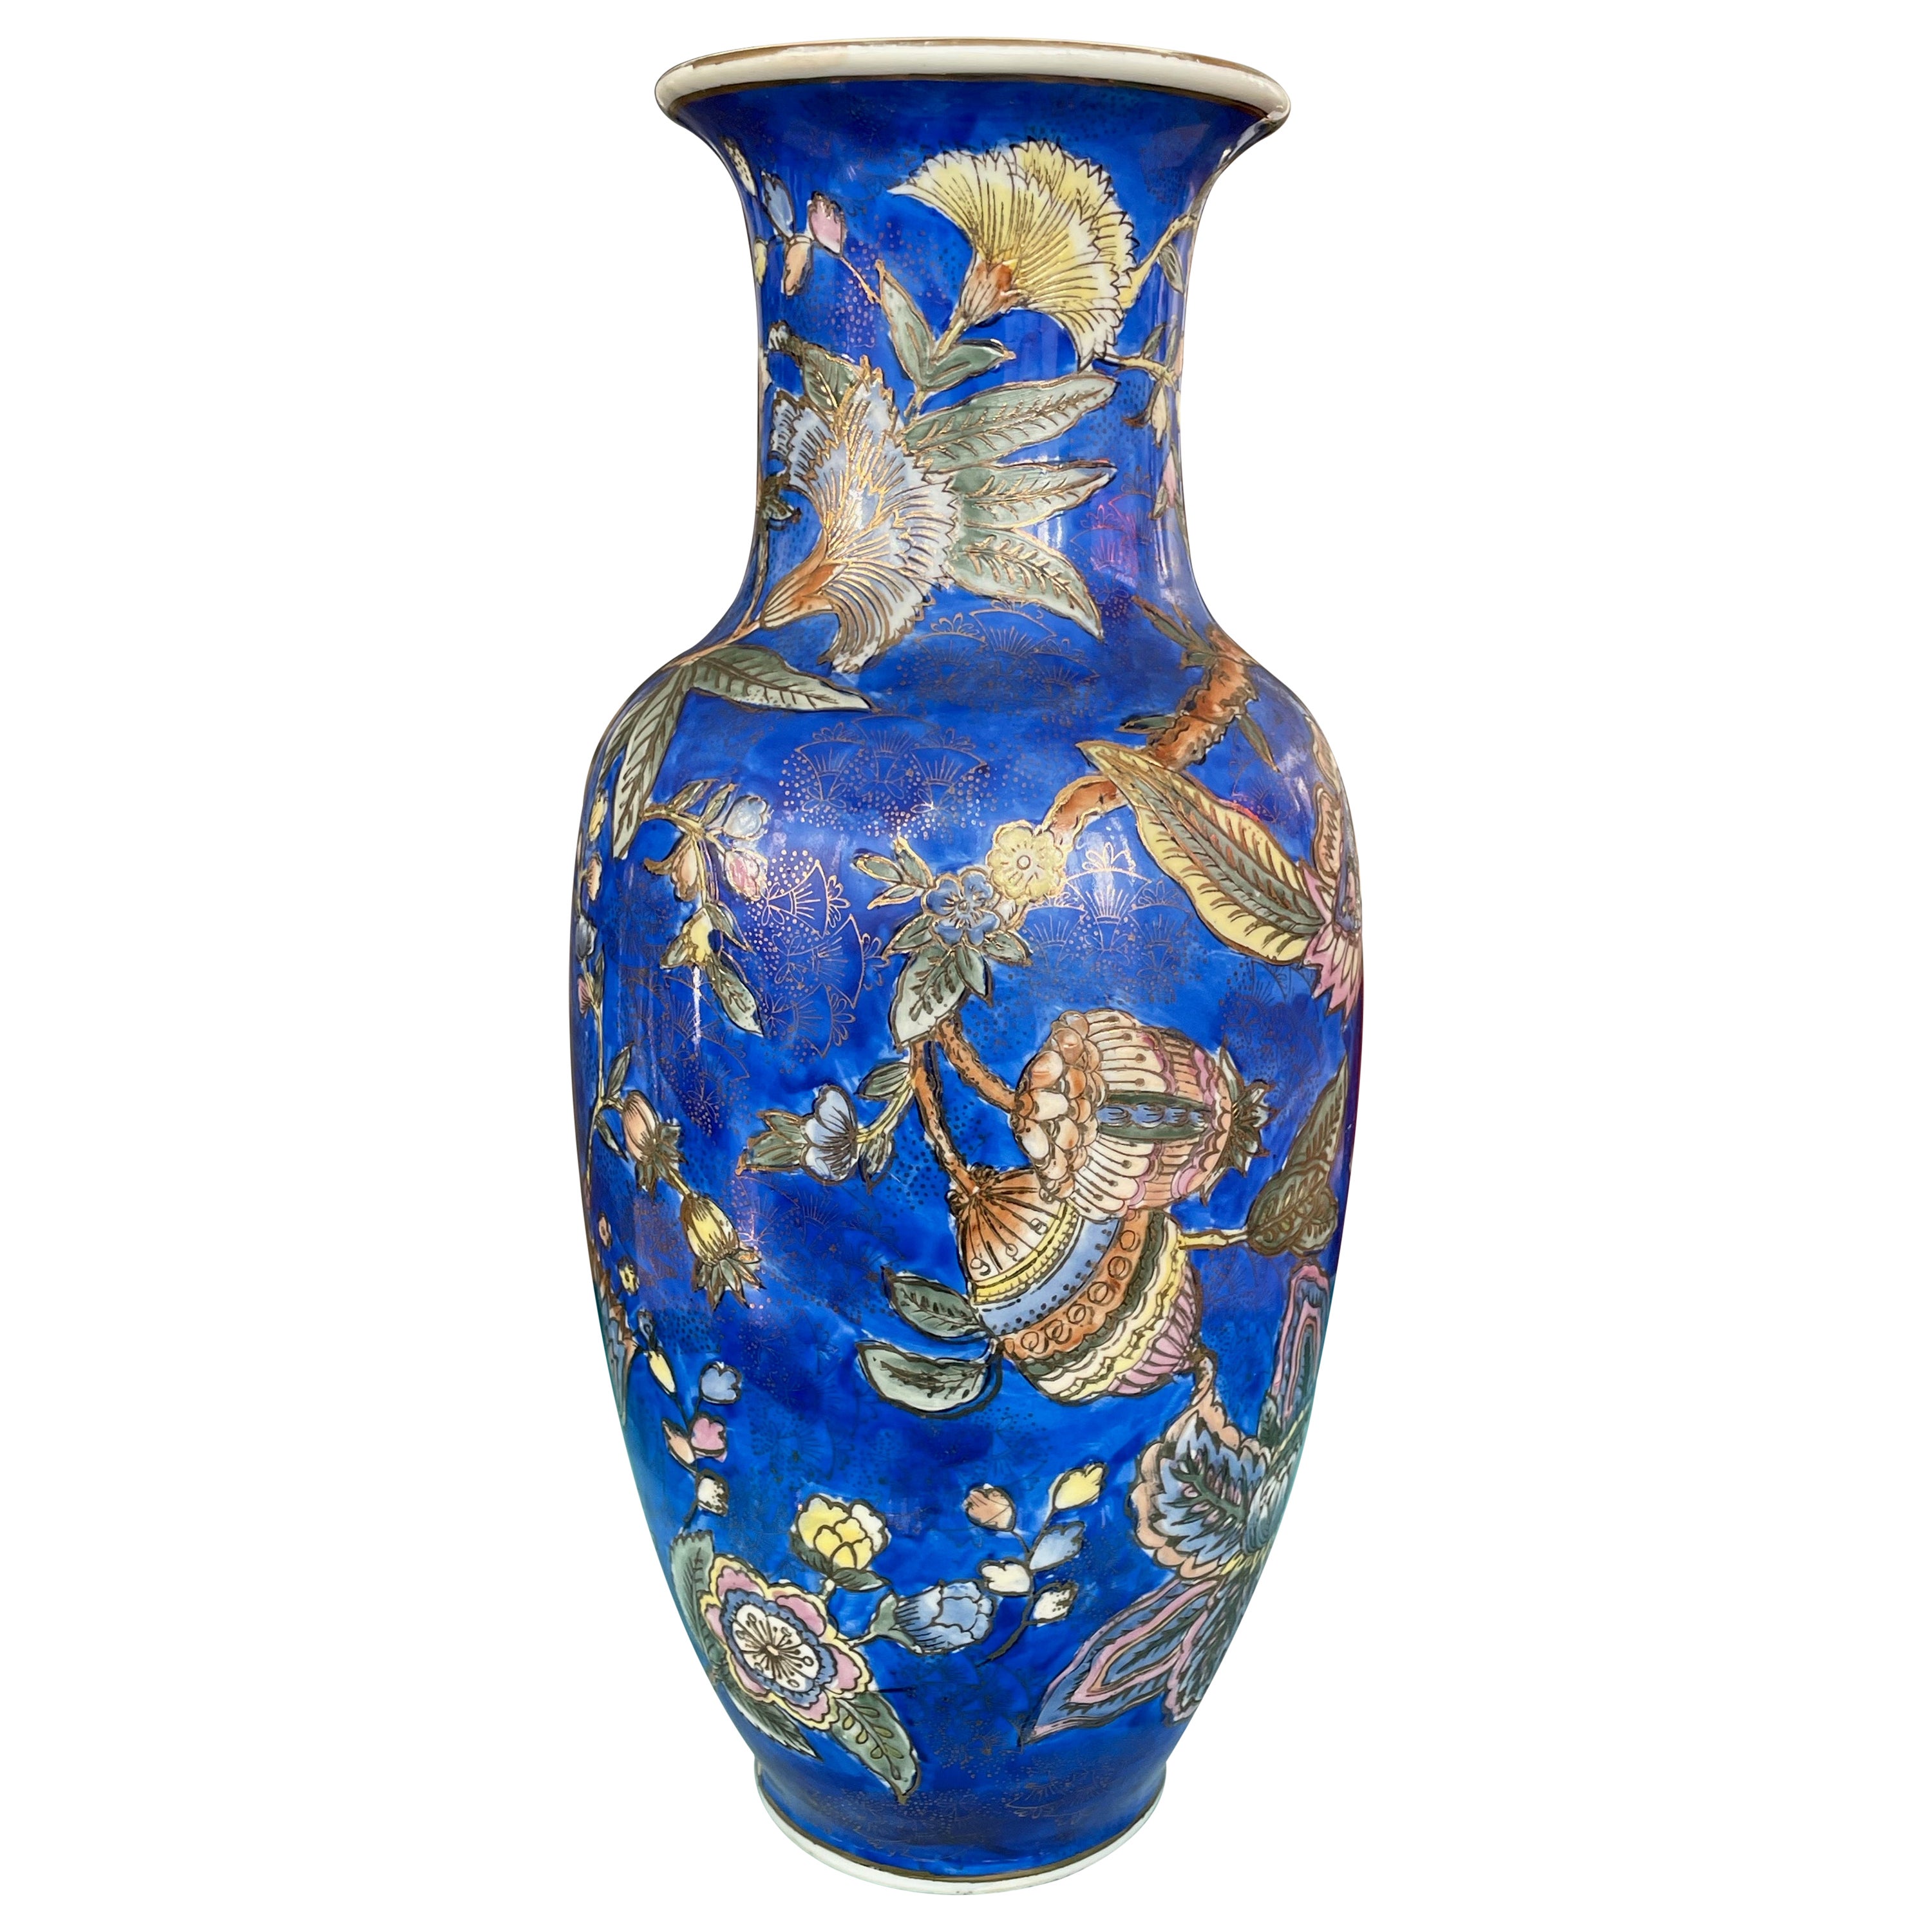 Chinesische Vintage-Vase aus blauem Porzellan